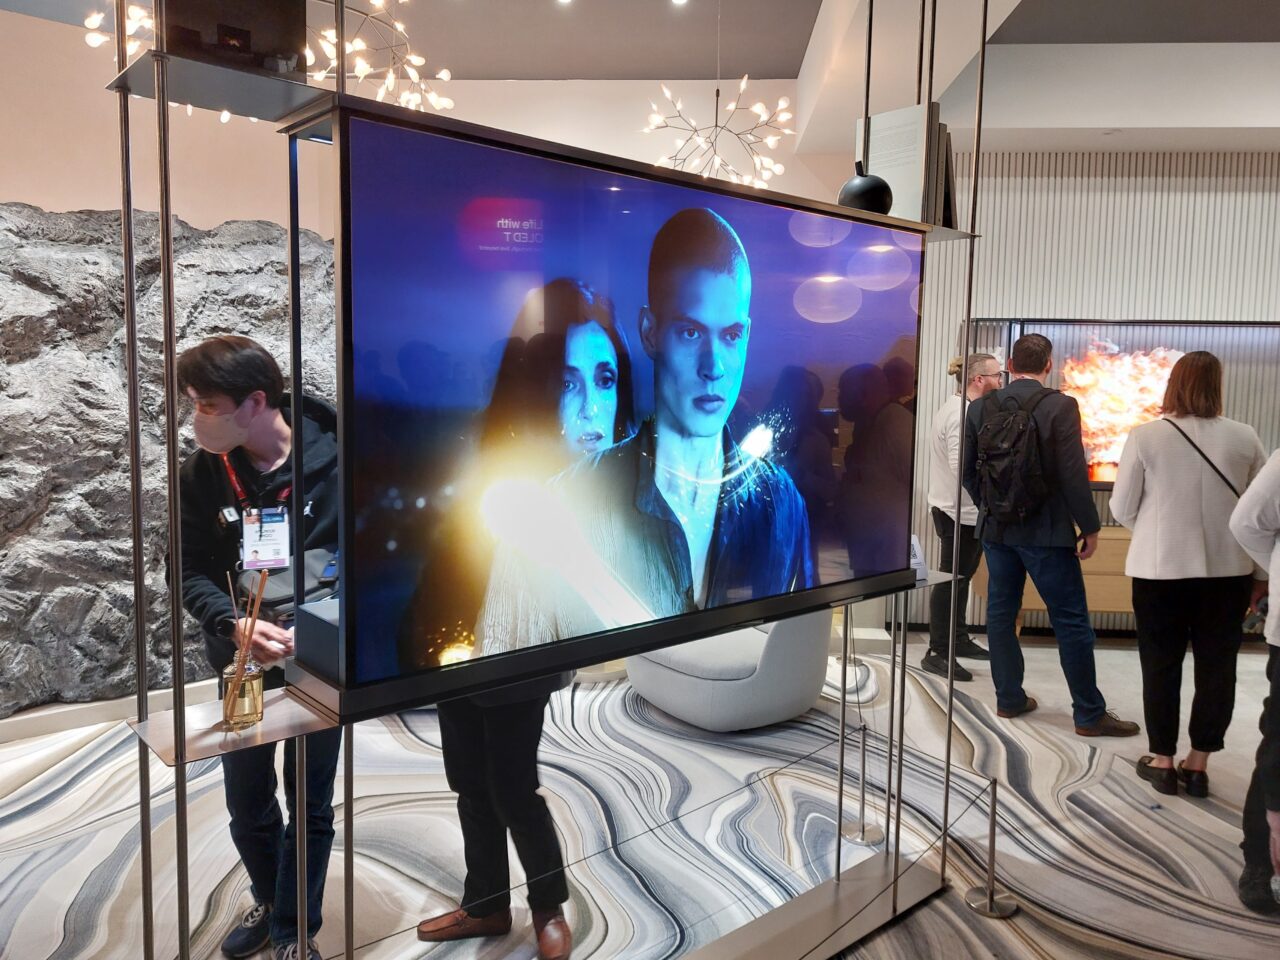 Telewizor LG Signature OLED T na stojaku prezentujący grafikę z dwoma postaciami, w tle widoczni ludzie zwiedzający pokaz technologiczny.